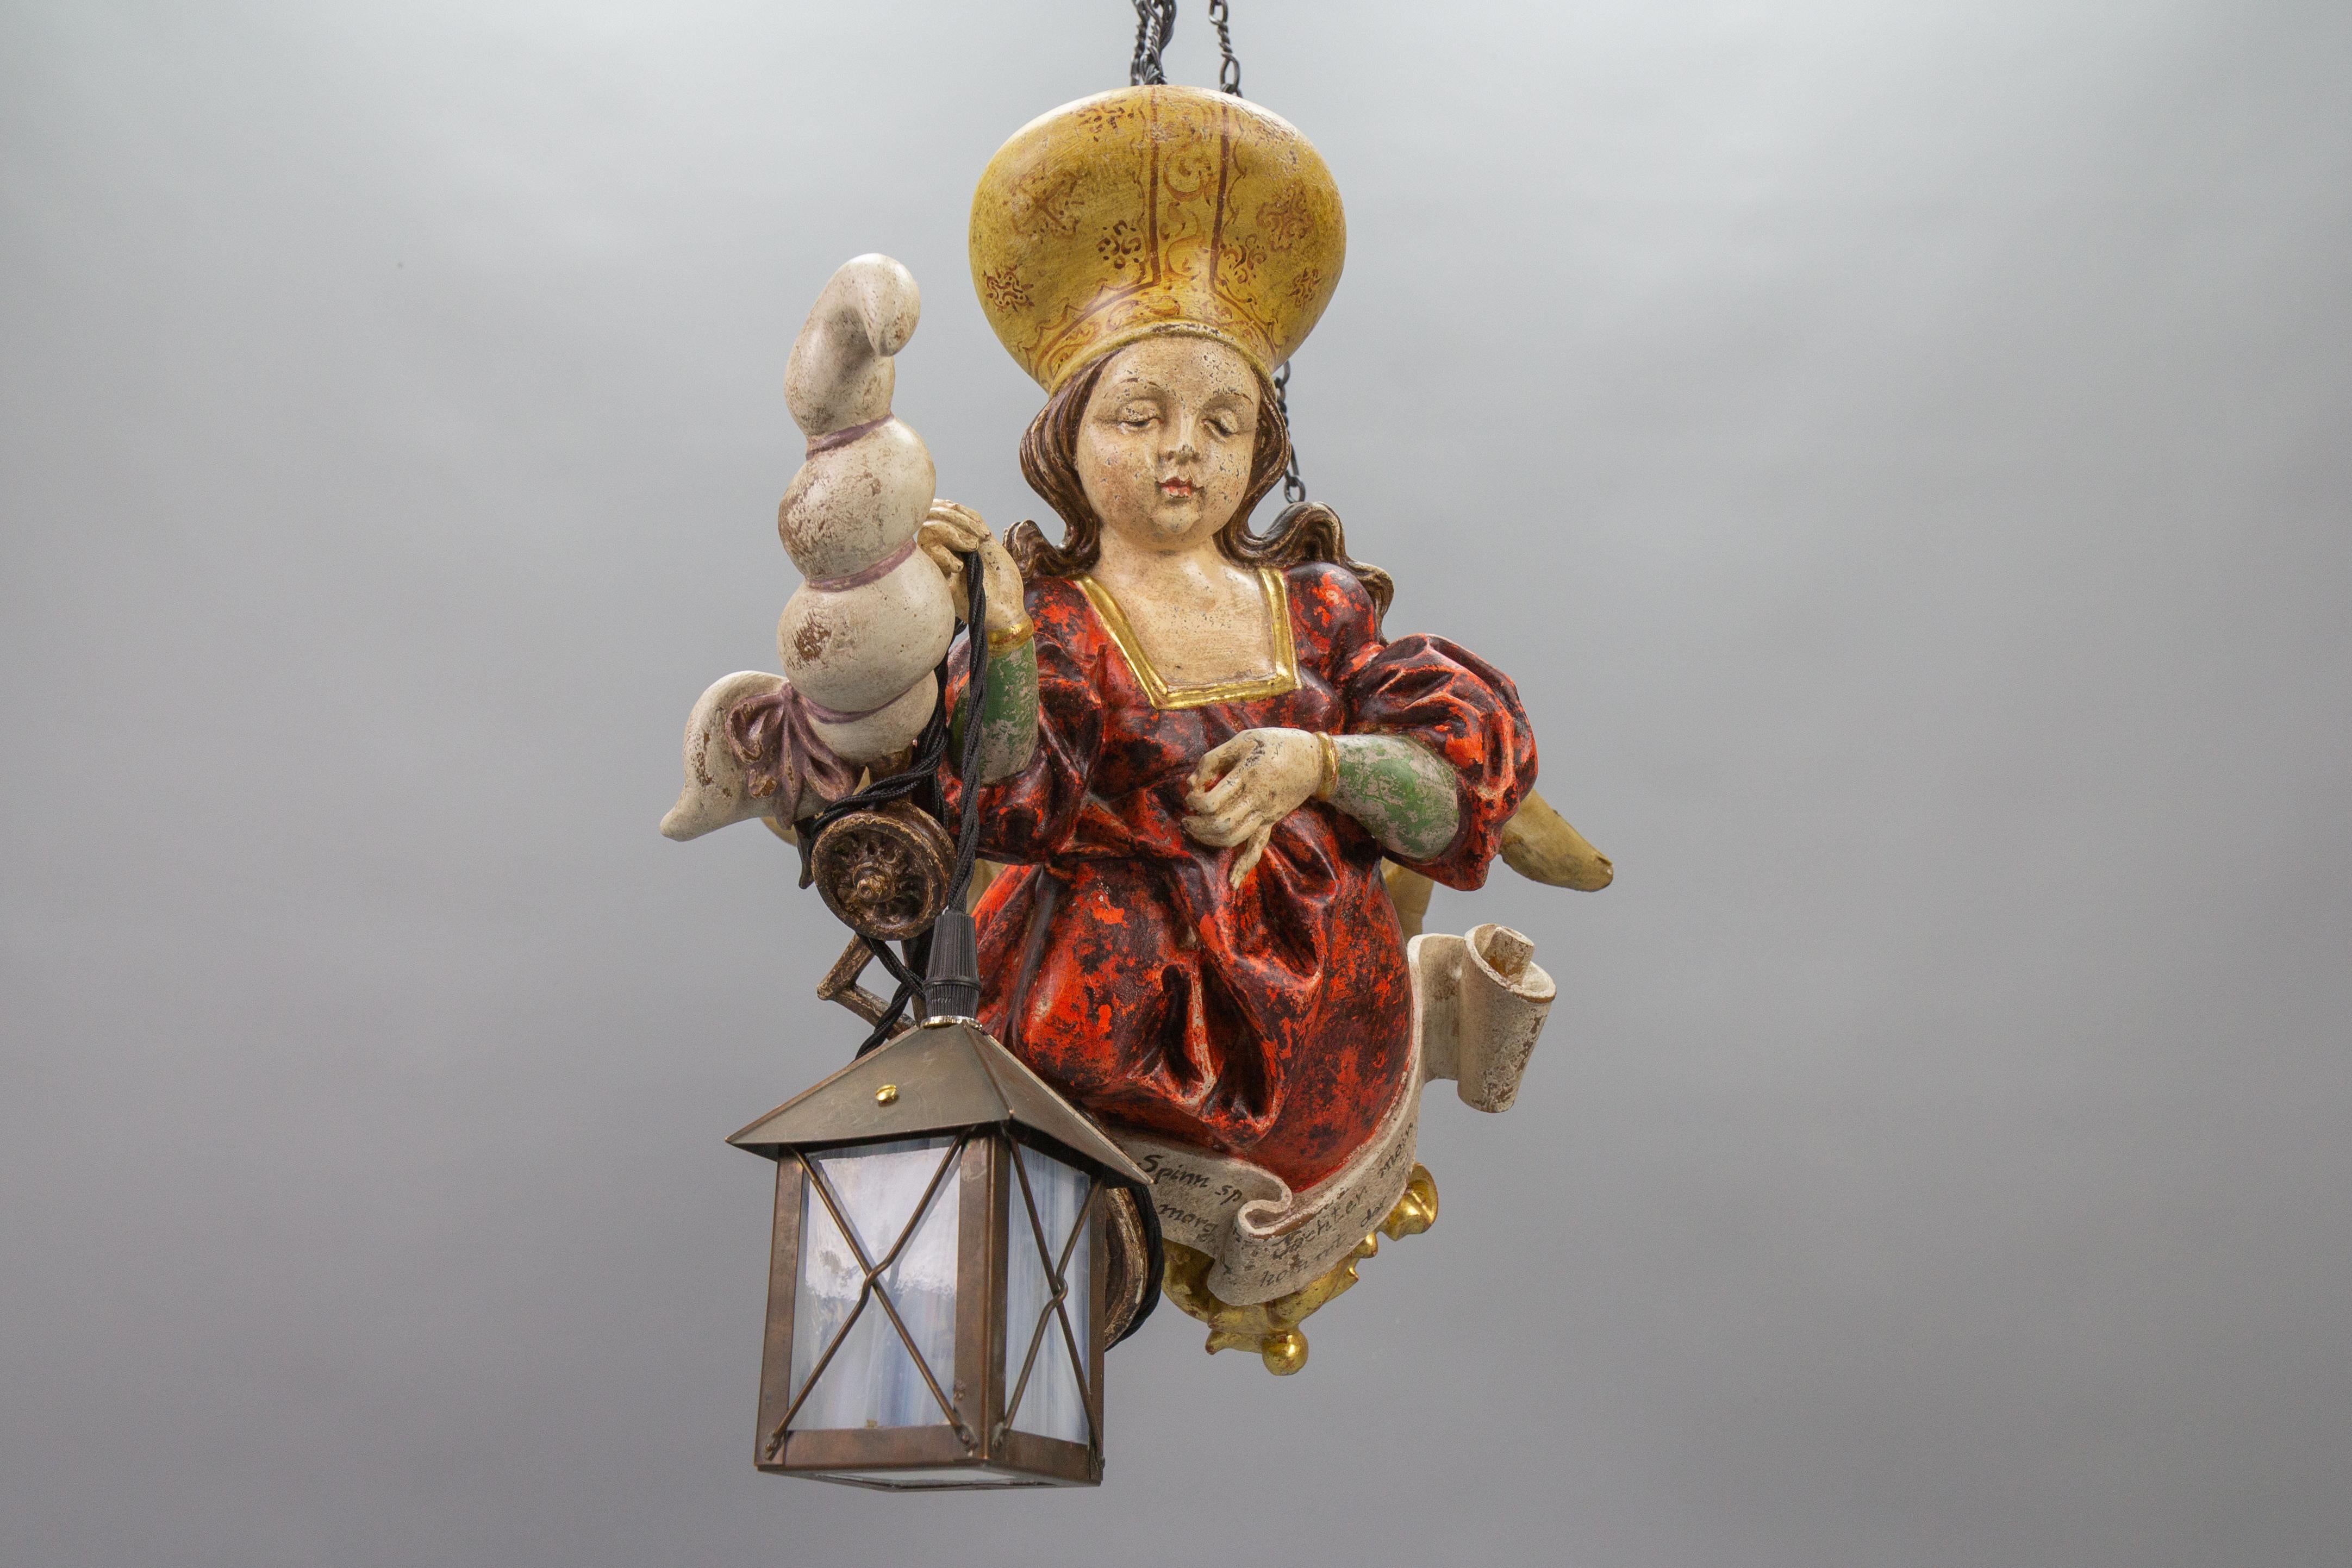 Antike deutsche Pendelleuchte Holz Polychrome Lüsterweibchen mit Laterne, von circa 1920.
Dieser bezaubernde Lüsterweibchen-Kronleuchter in kompakter Größe zeigt eine meisterhaft geschnitzte Figur einer jungen Dame in einem roten Kleid mit einem